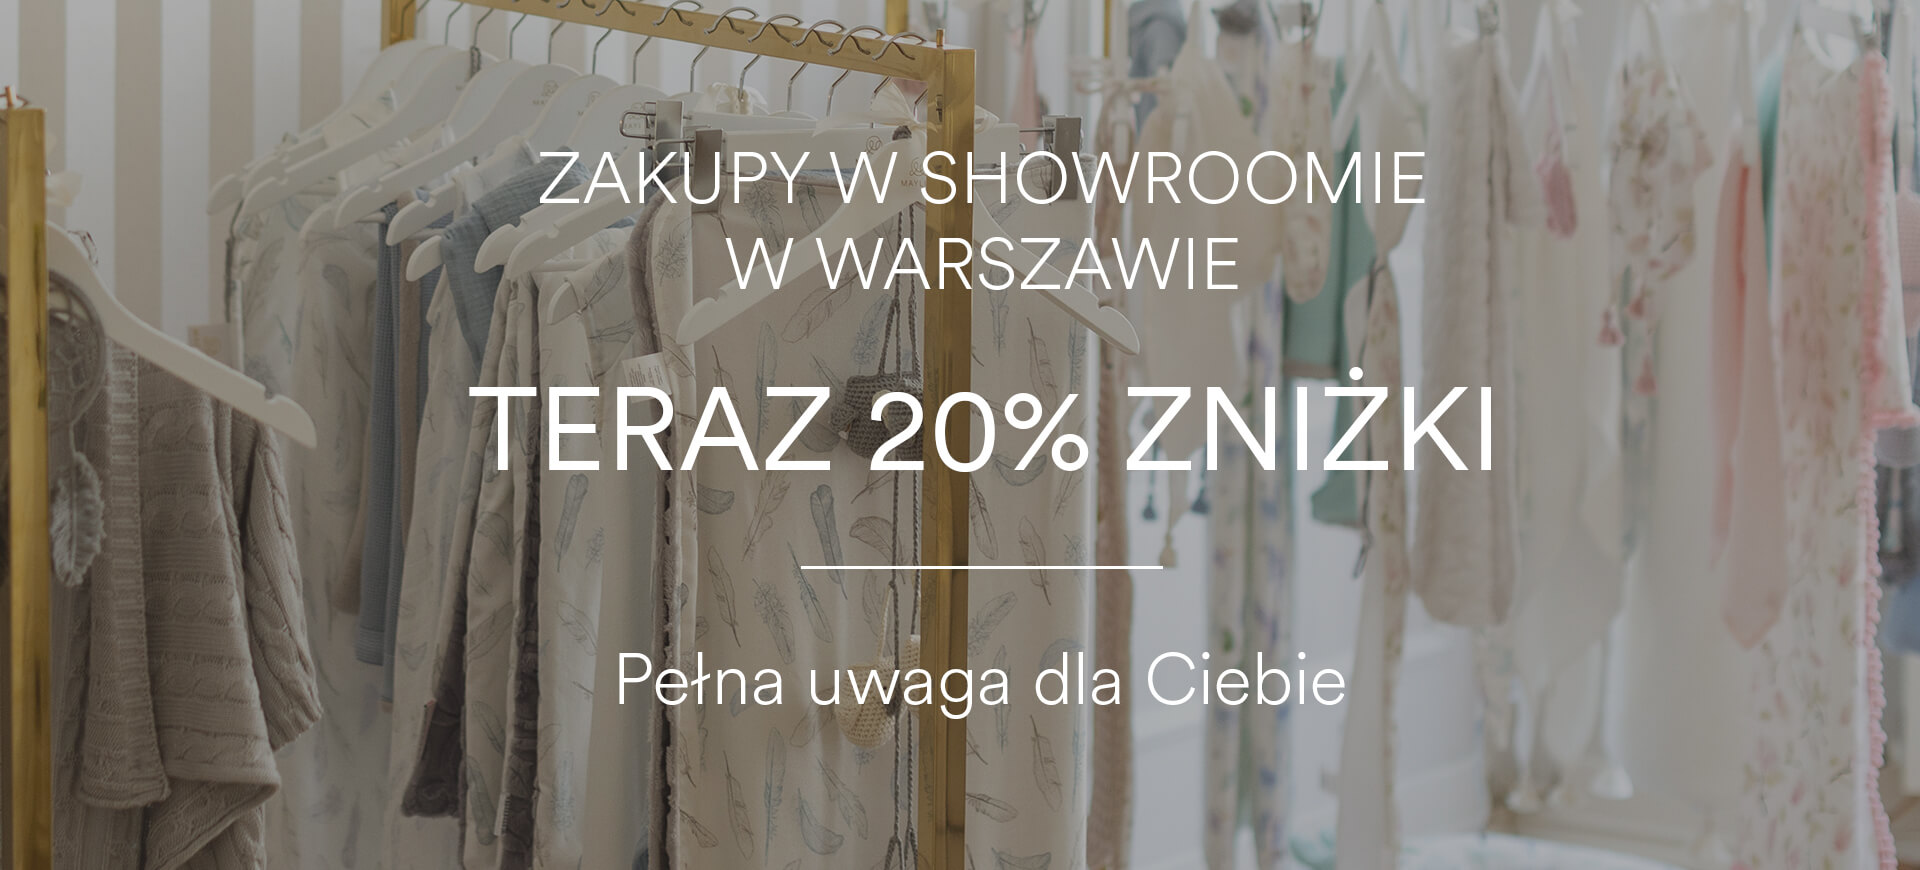 Zakupy w showroomie w Warszawie - teraz 20% zniżki